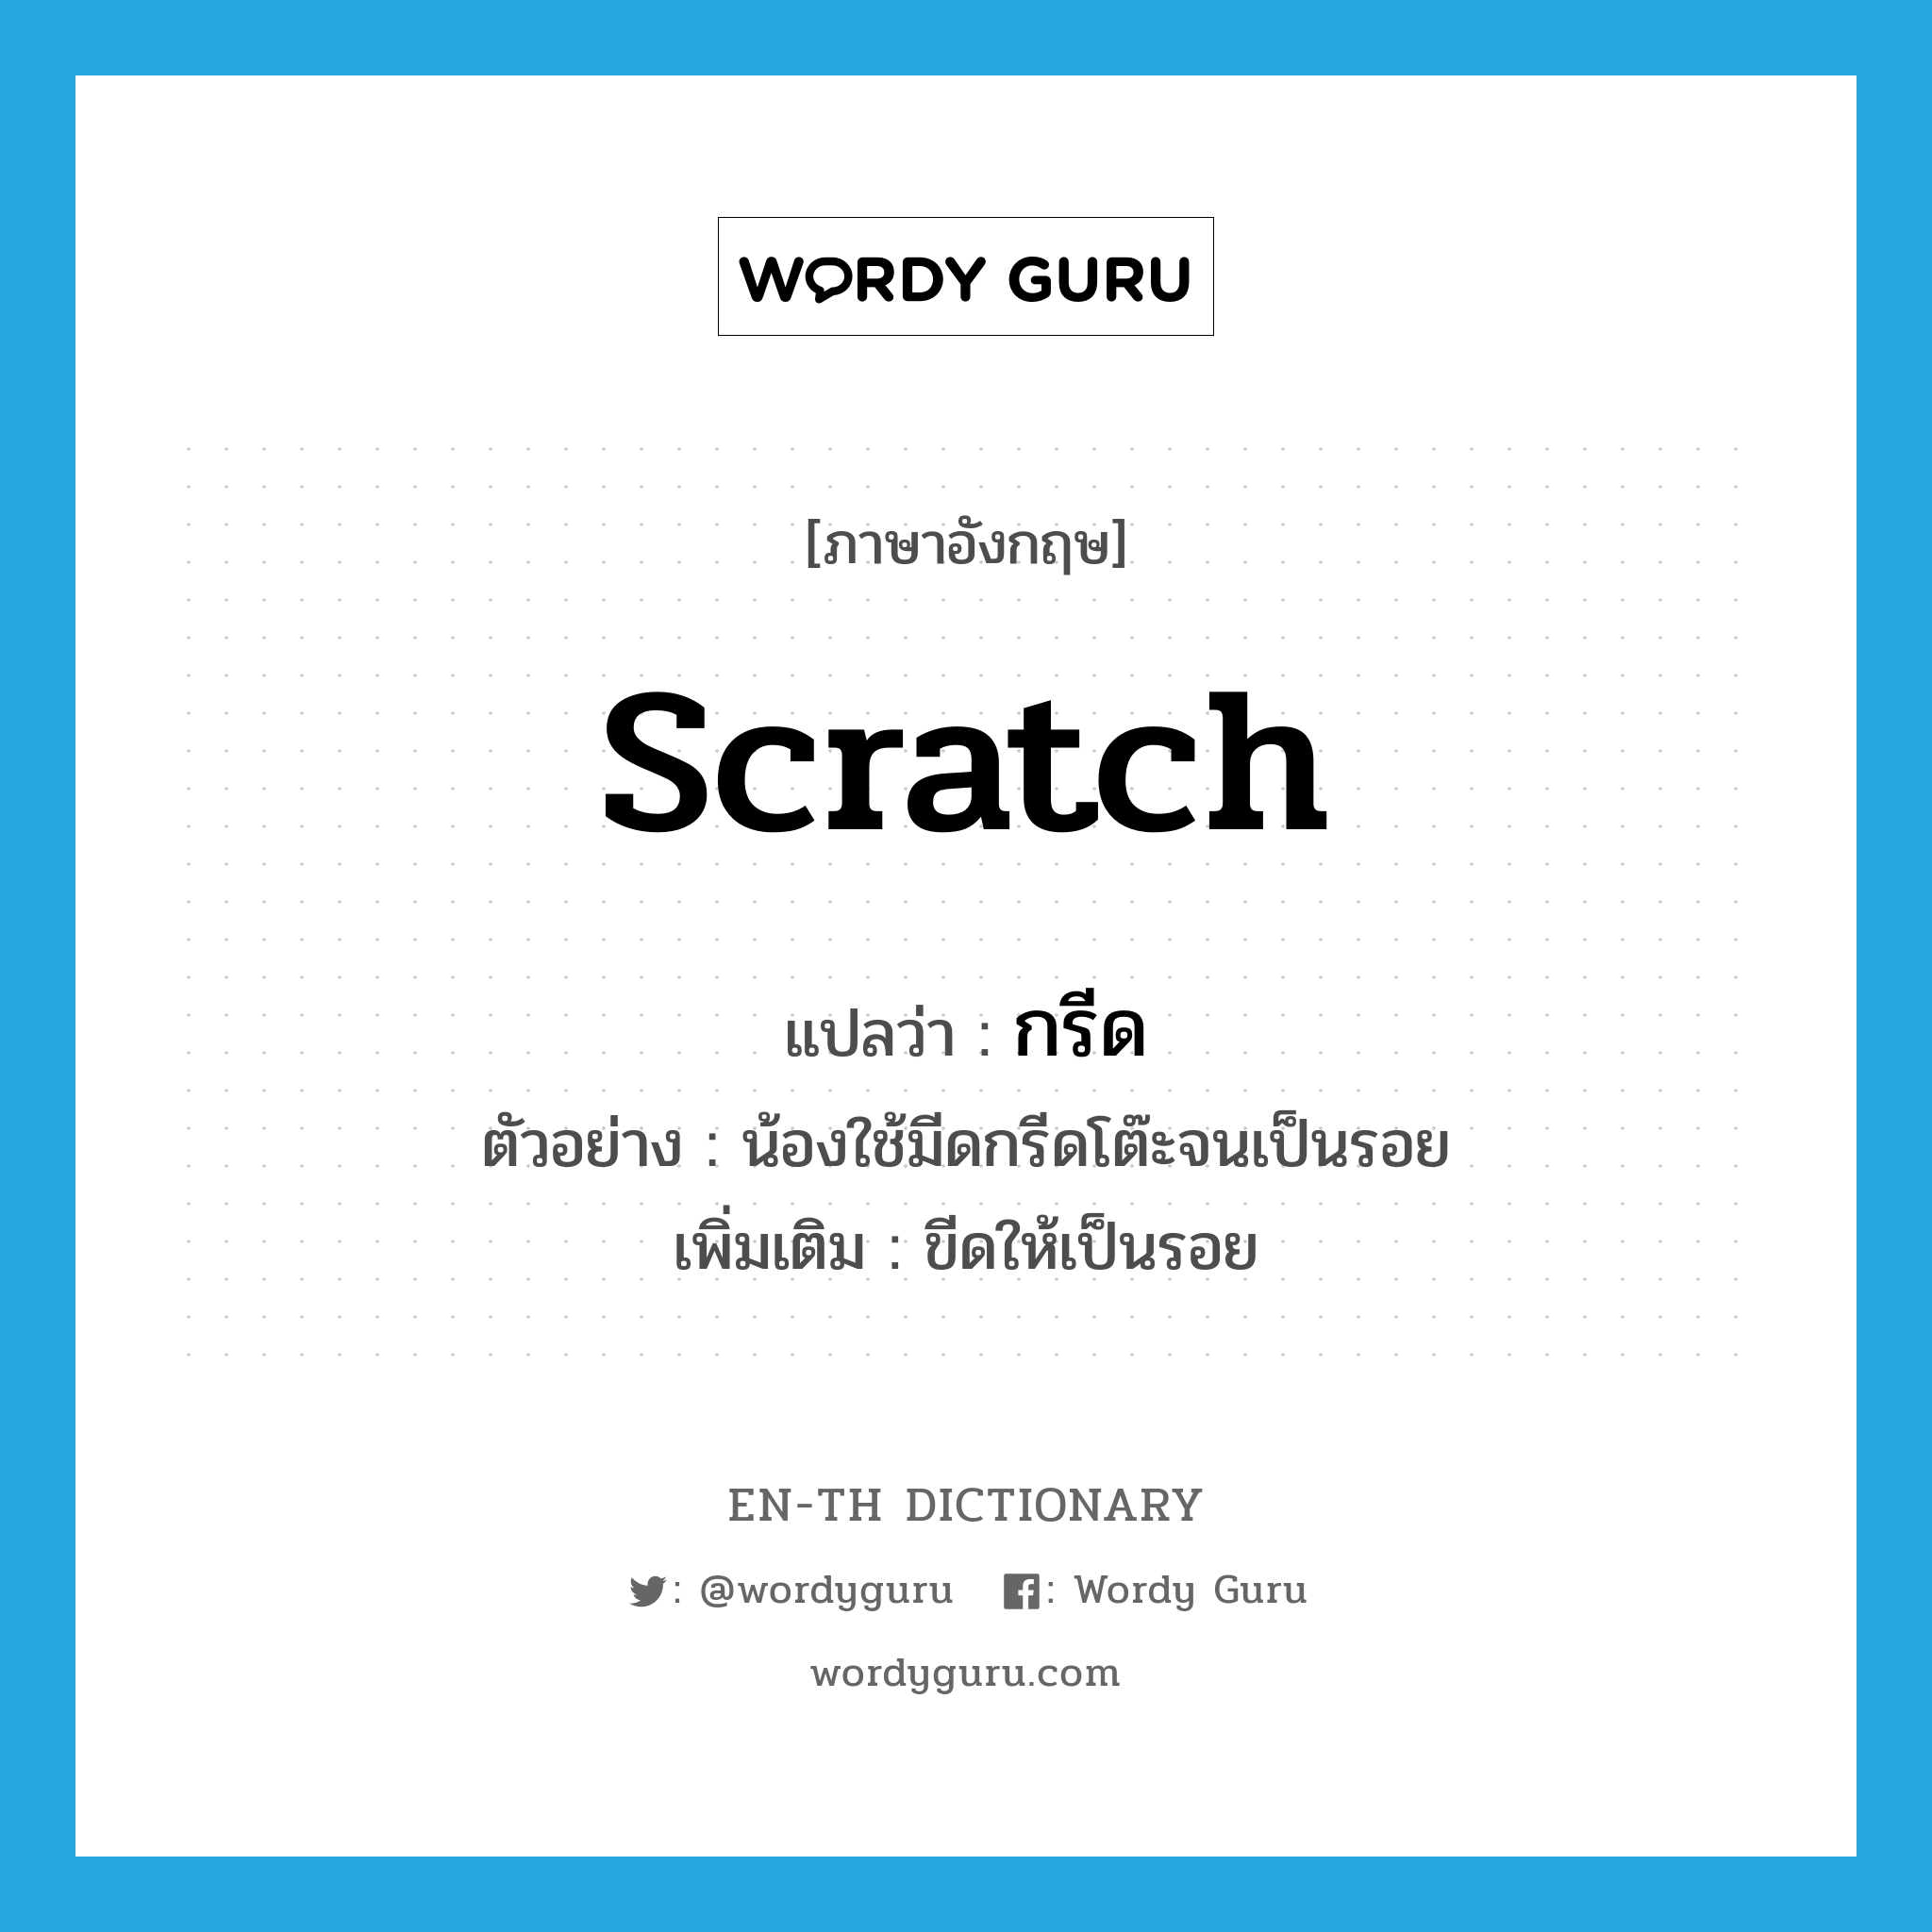 scratch แปลว่า?, คำศัพท์ภาษาอังกฤษ scratch แปลว่า กรีด ประเภท V ตัวอย่าง น้องใช้มีดกรีดโต๊ะจนเป็นรอย เพิ่มเติม ขีดให้เป็นรอย หมวด V